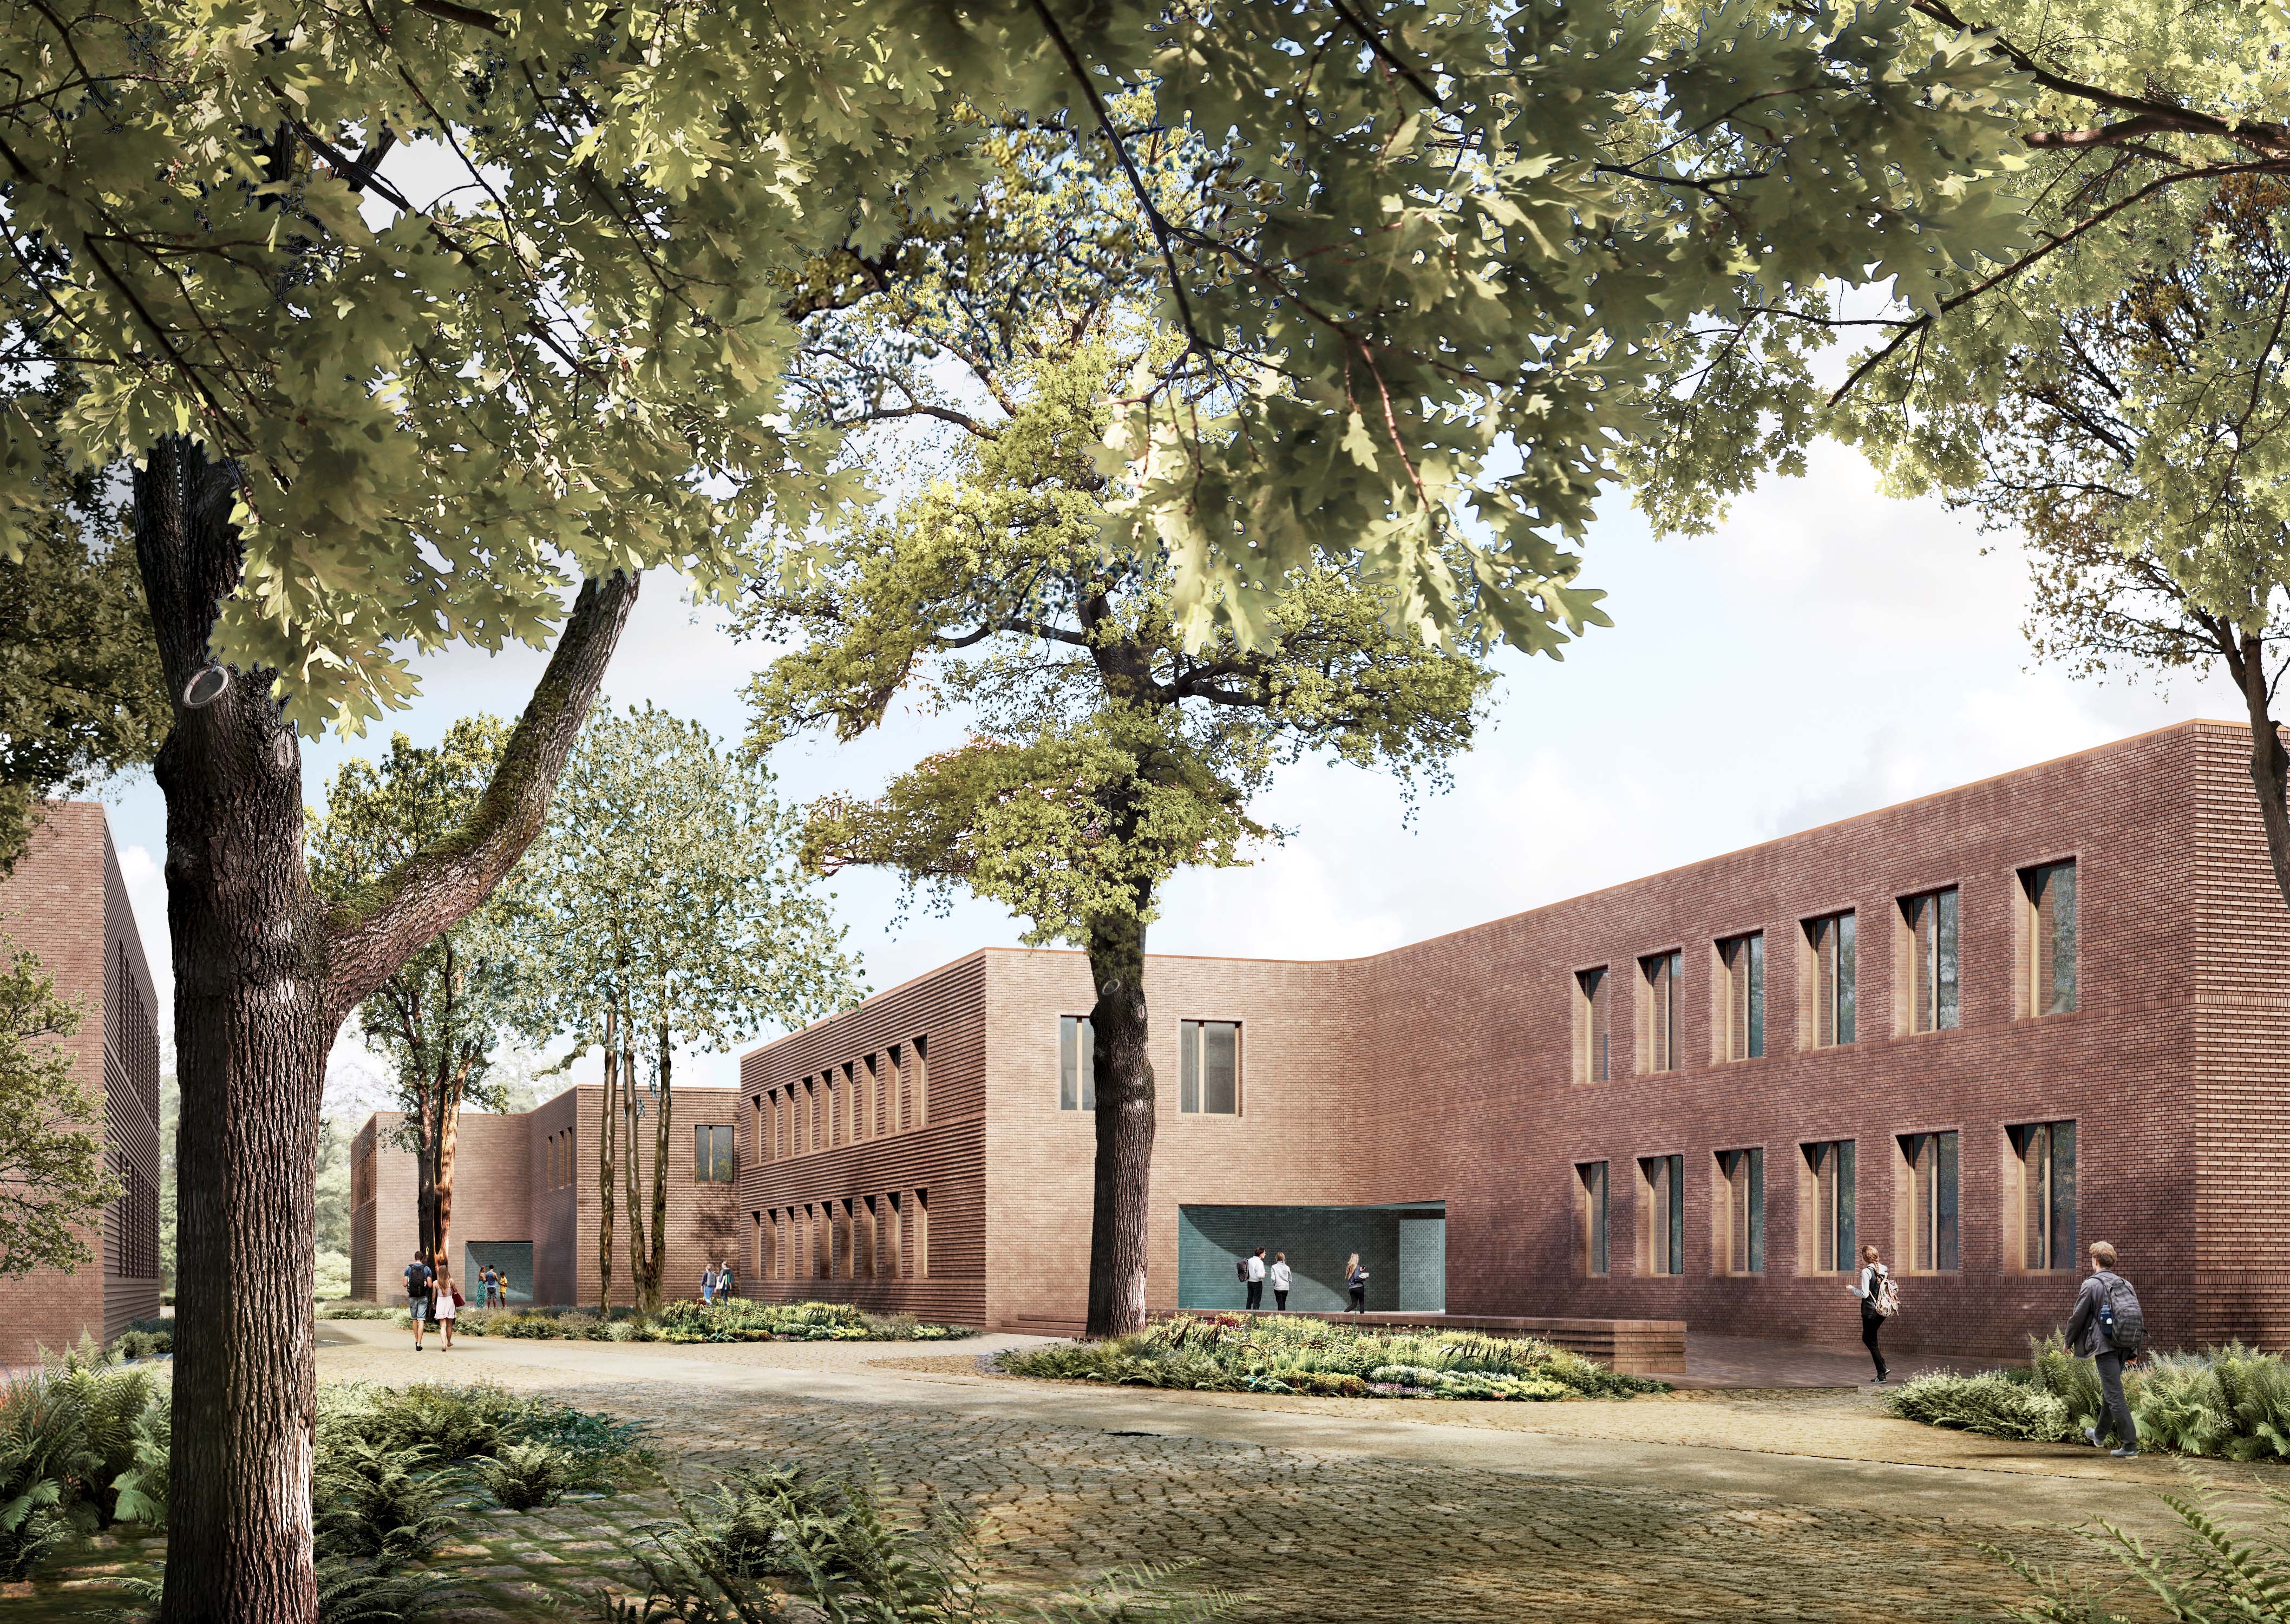 Ab Oktober 2019 beginnt die bauliche Neuordnung des Campus der
Universität Potsdam am Neuen Palais.